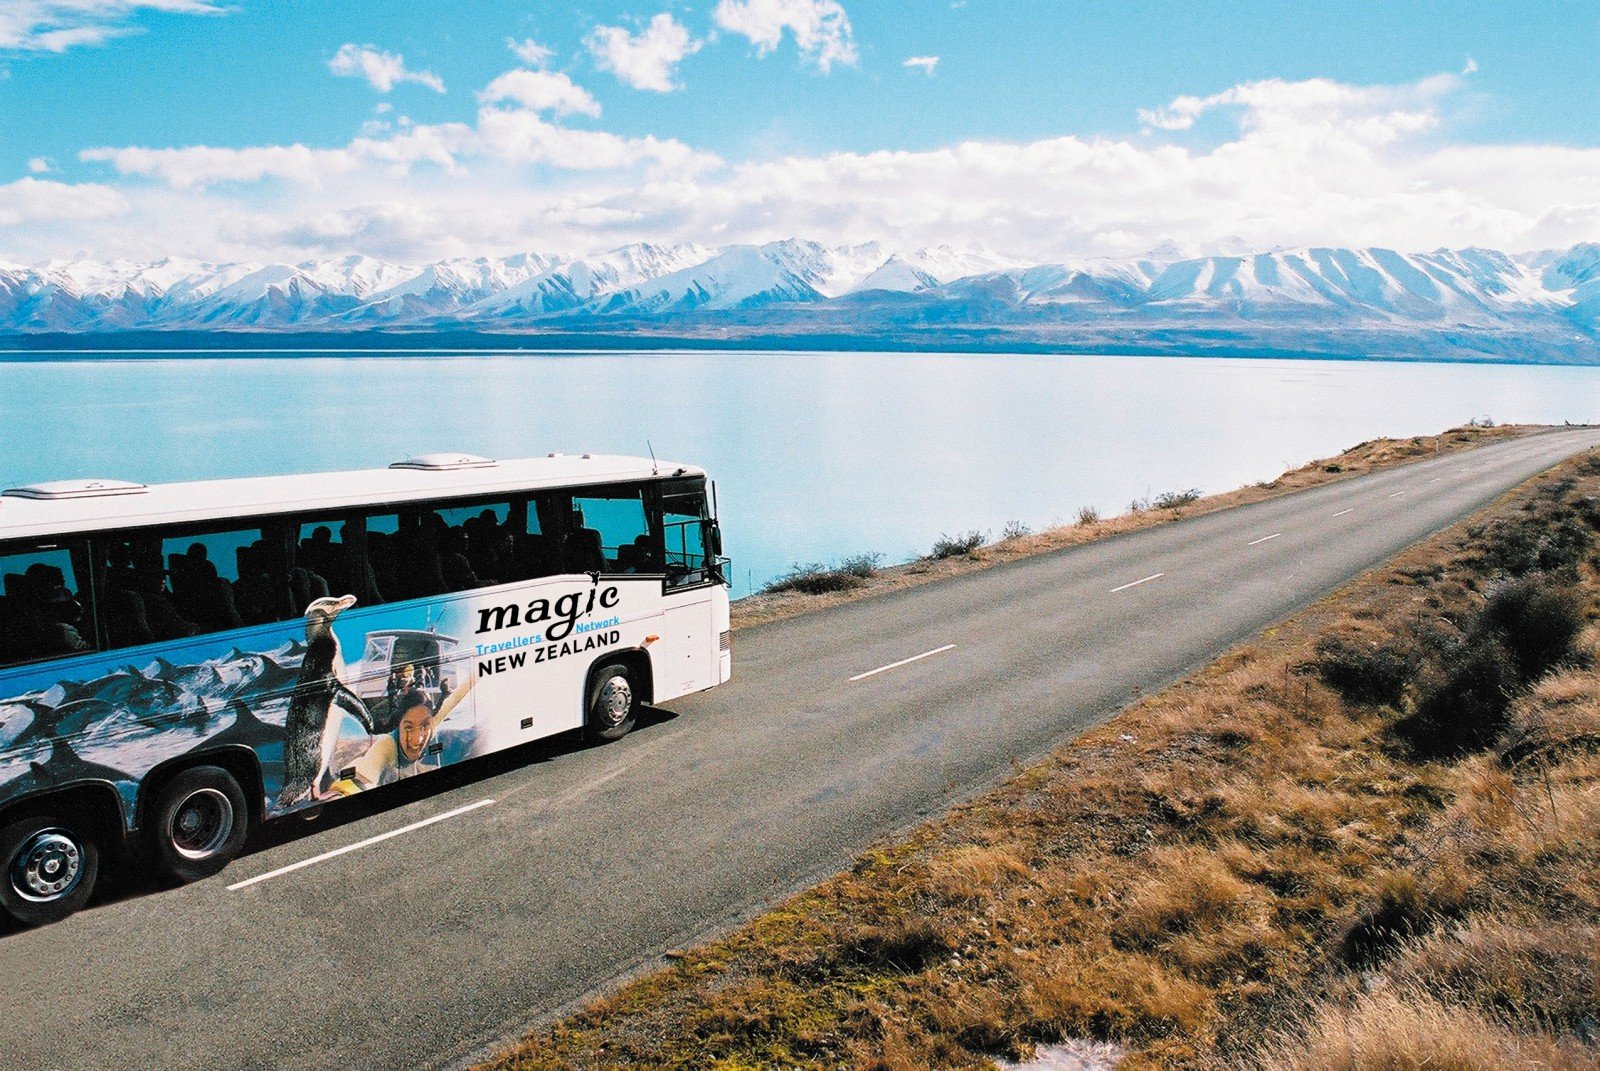 Дискавери автобусные туры. Автобусный тур. Автобусный тур к морю. Автобус для путешествий. Туризм на автобусе.